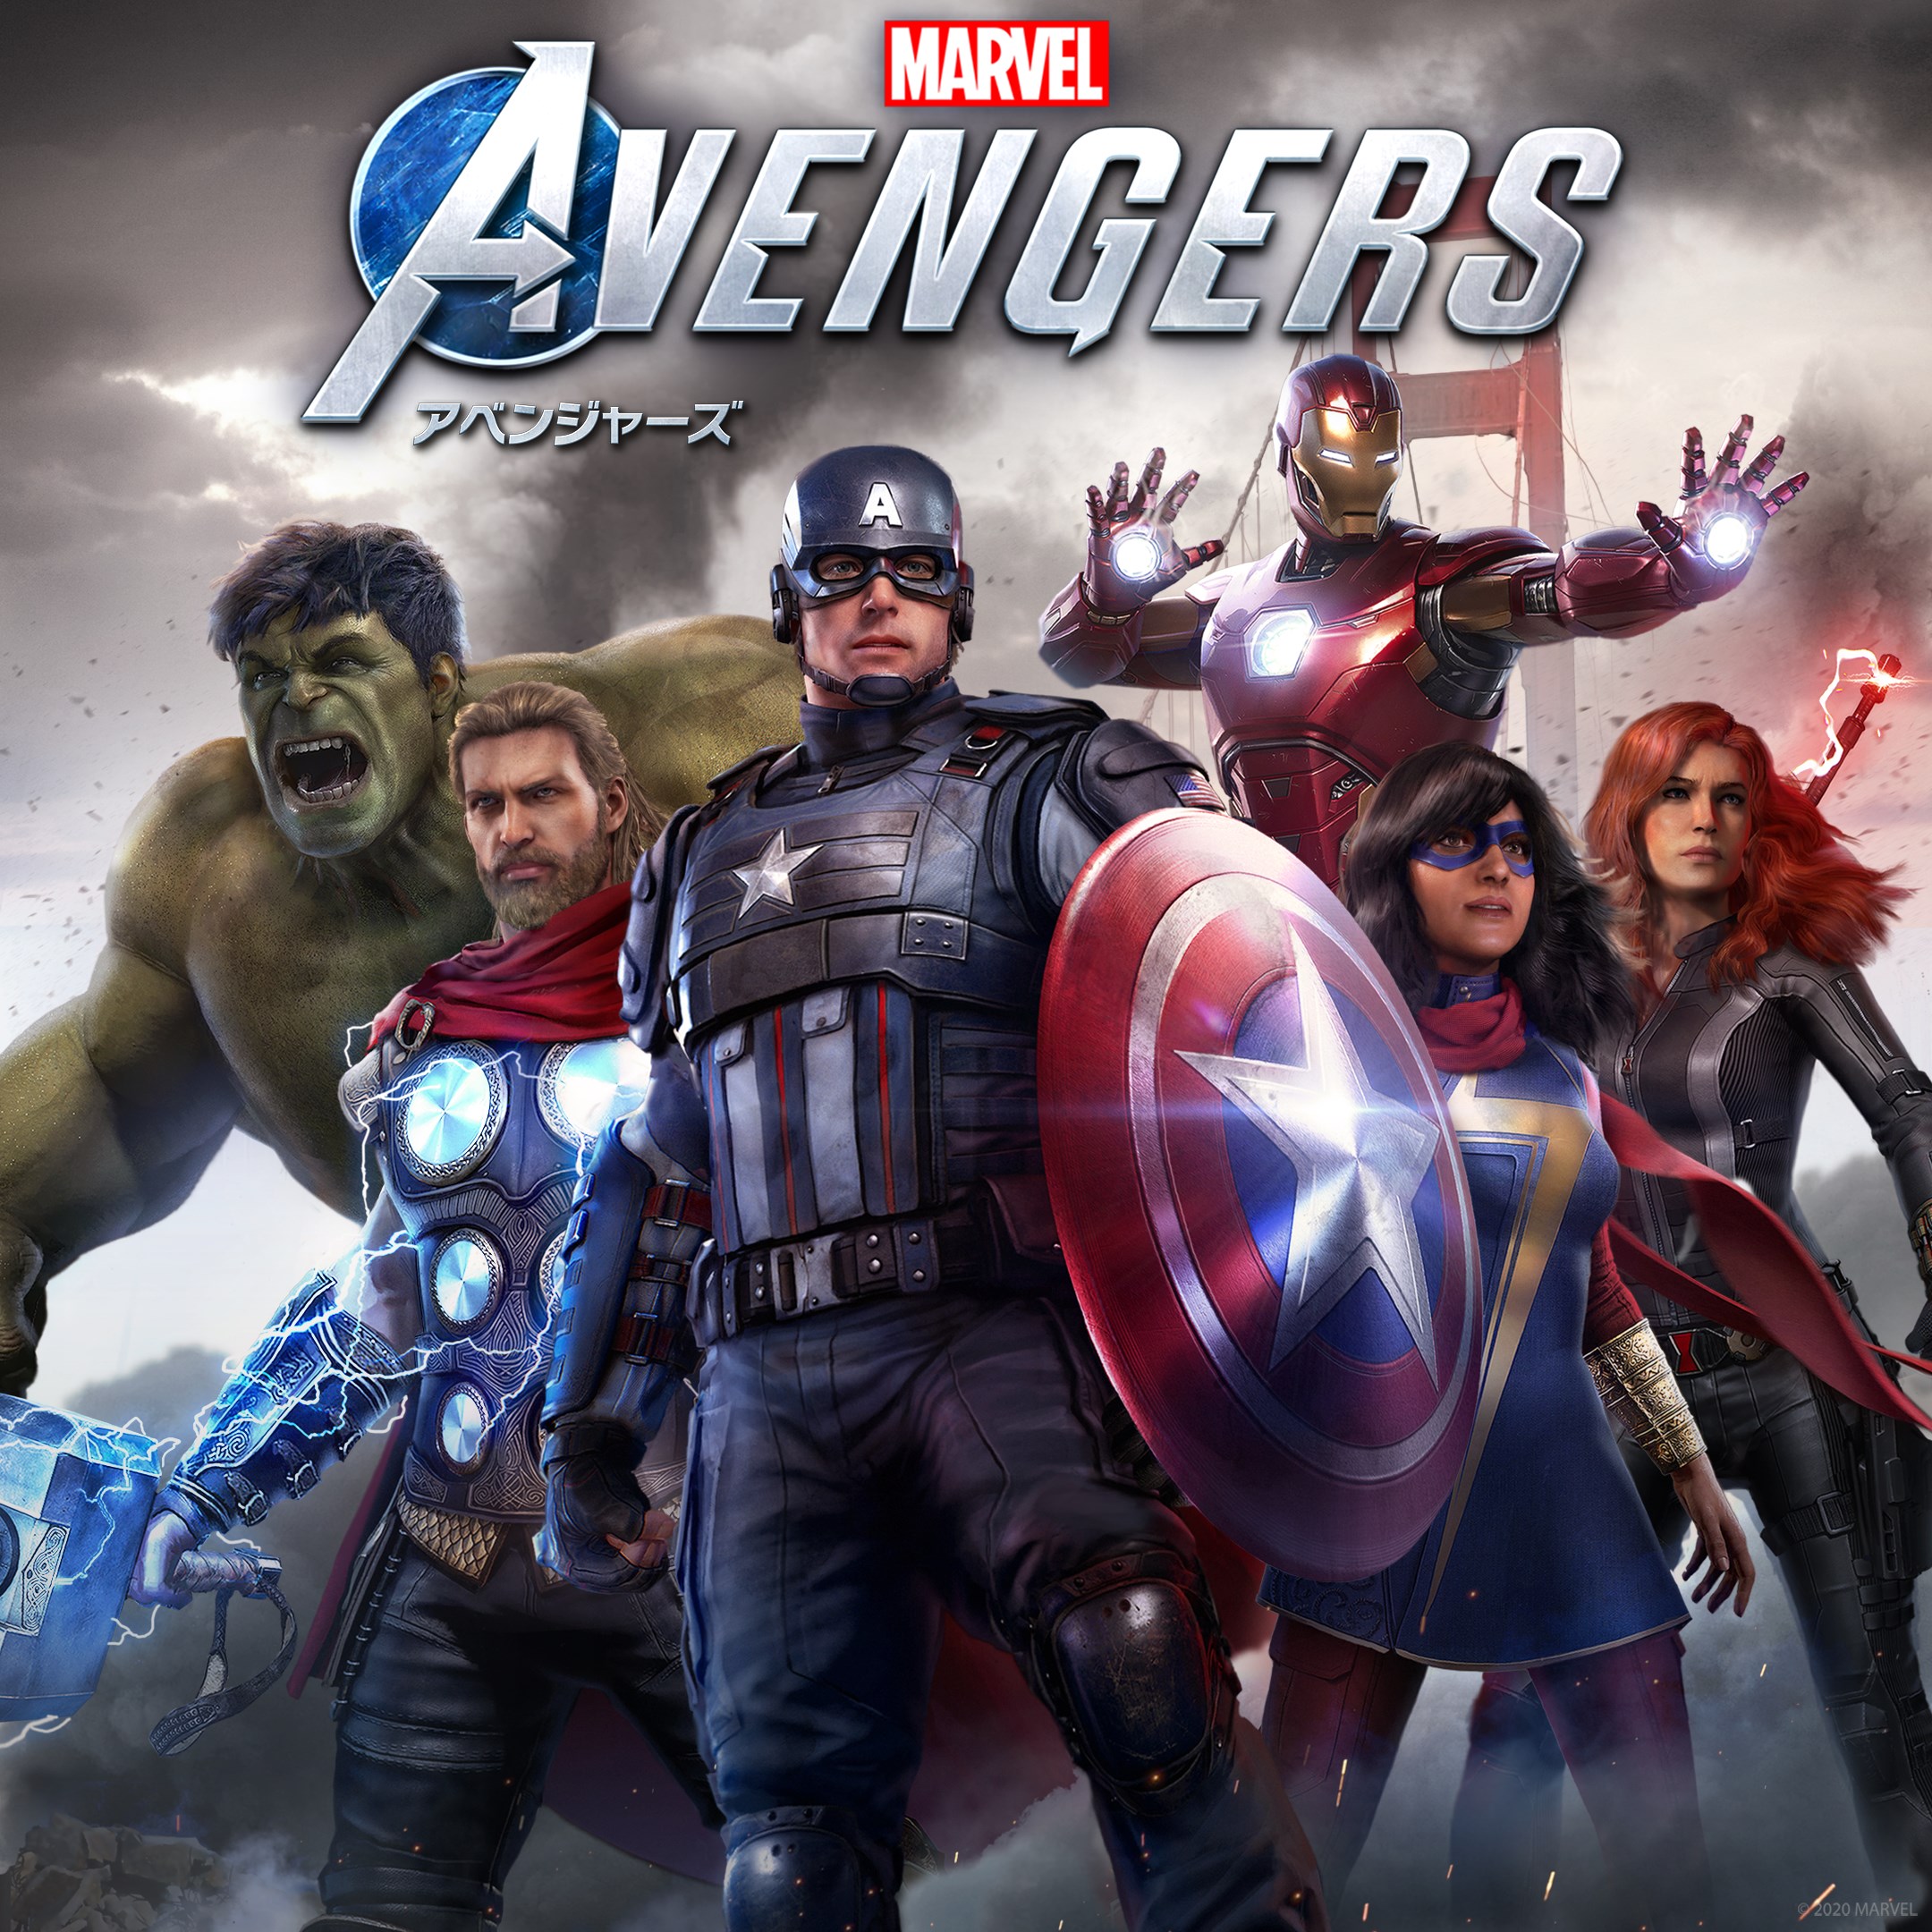 Marvel's Avengers (アベンジャーズ)